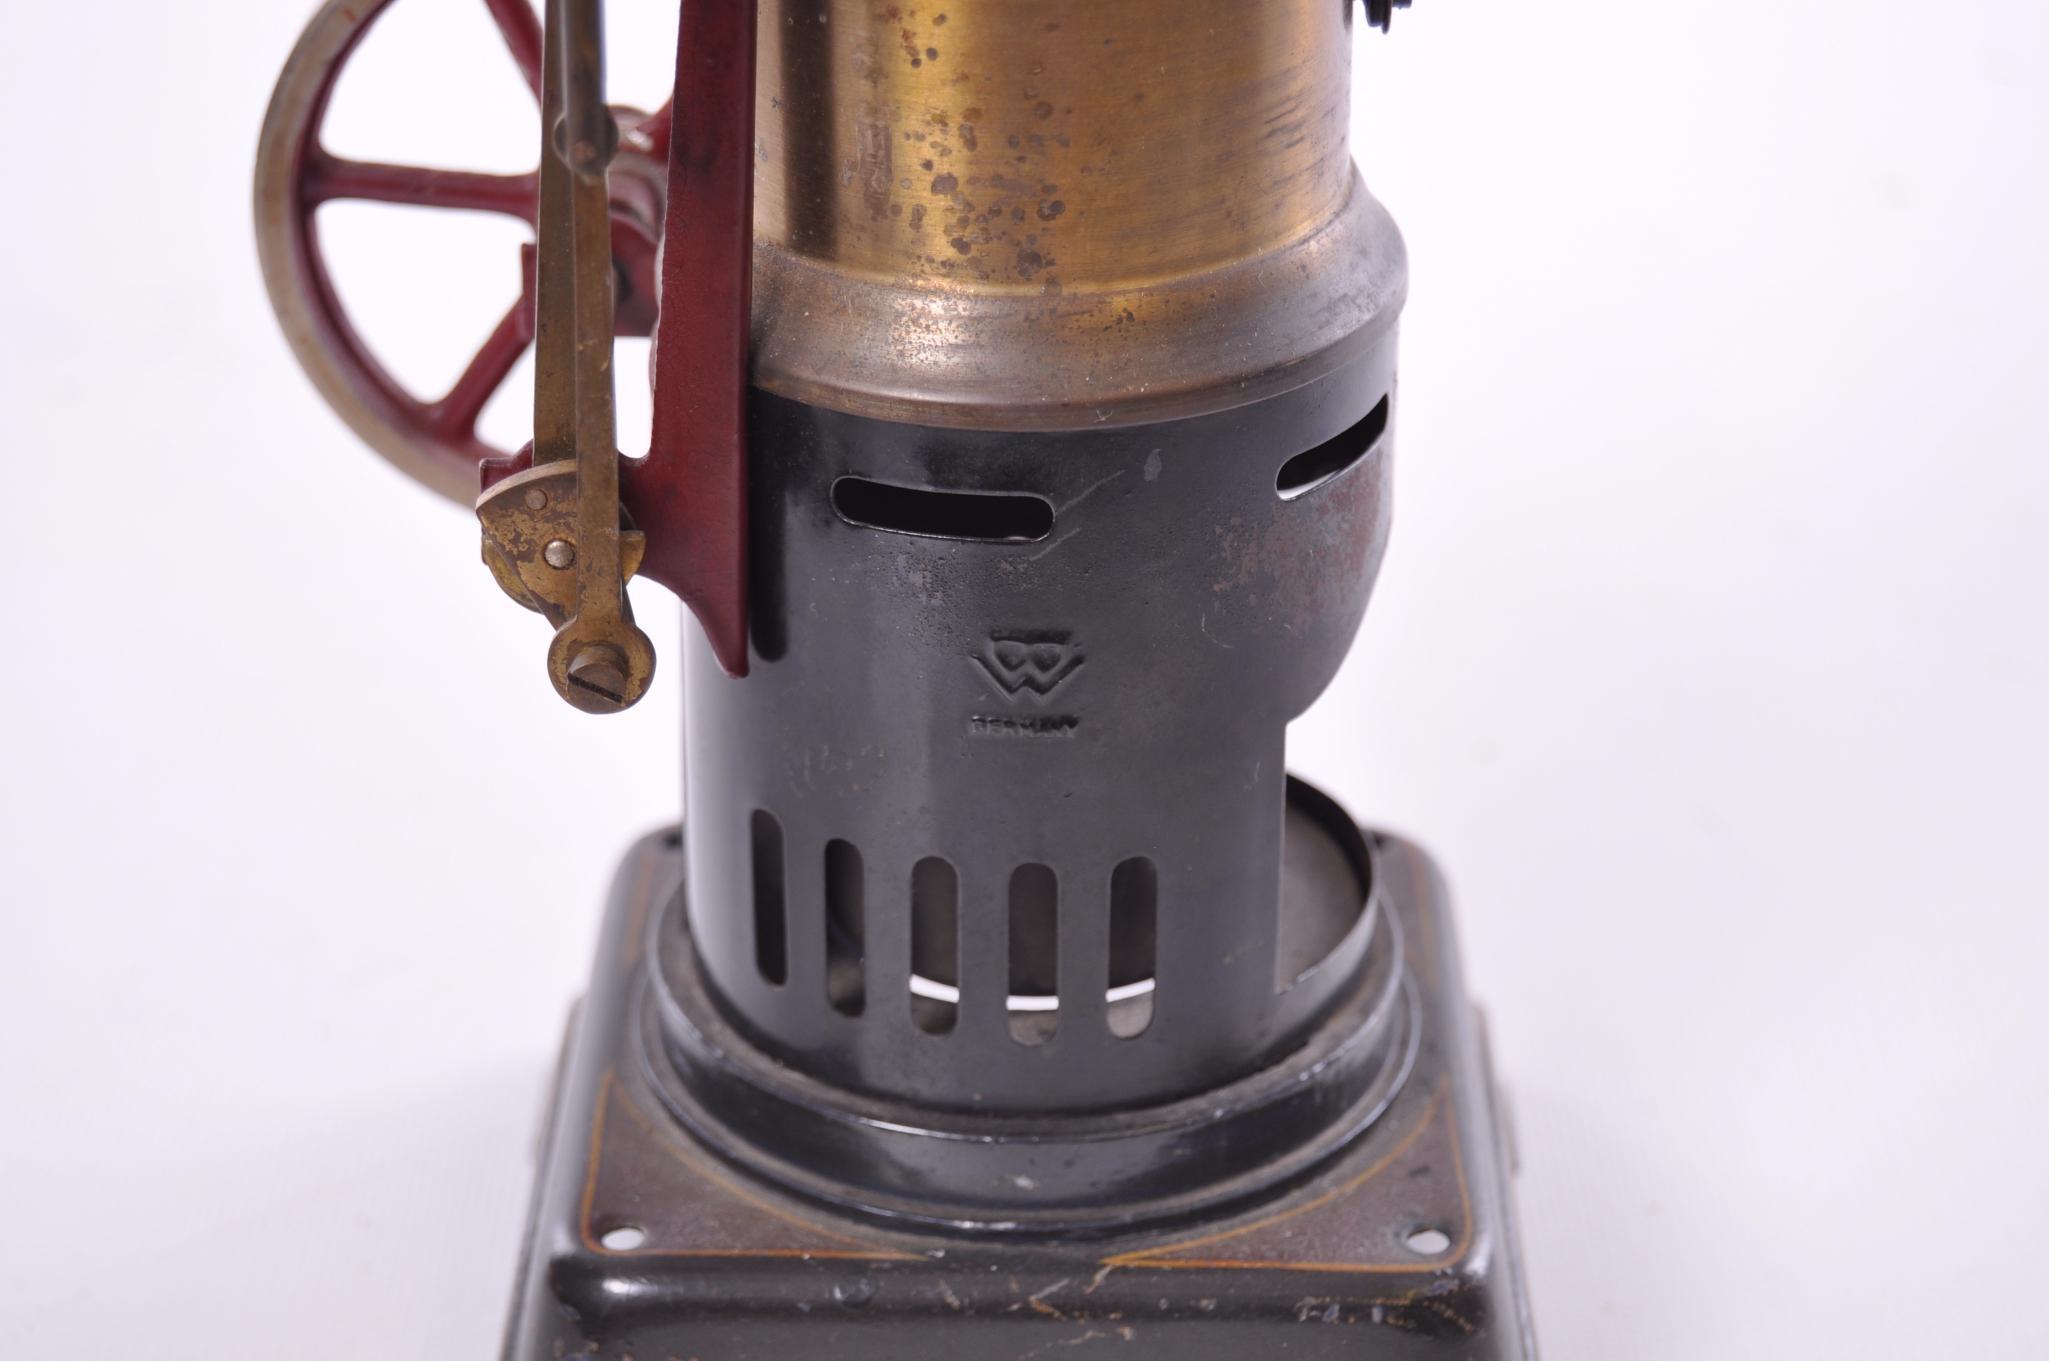 Antique Weeden Model 17 Vertical Toy Steam Engine